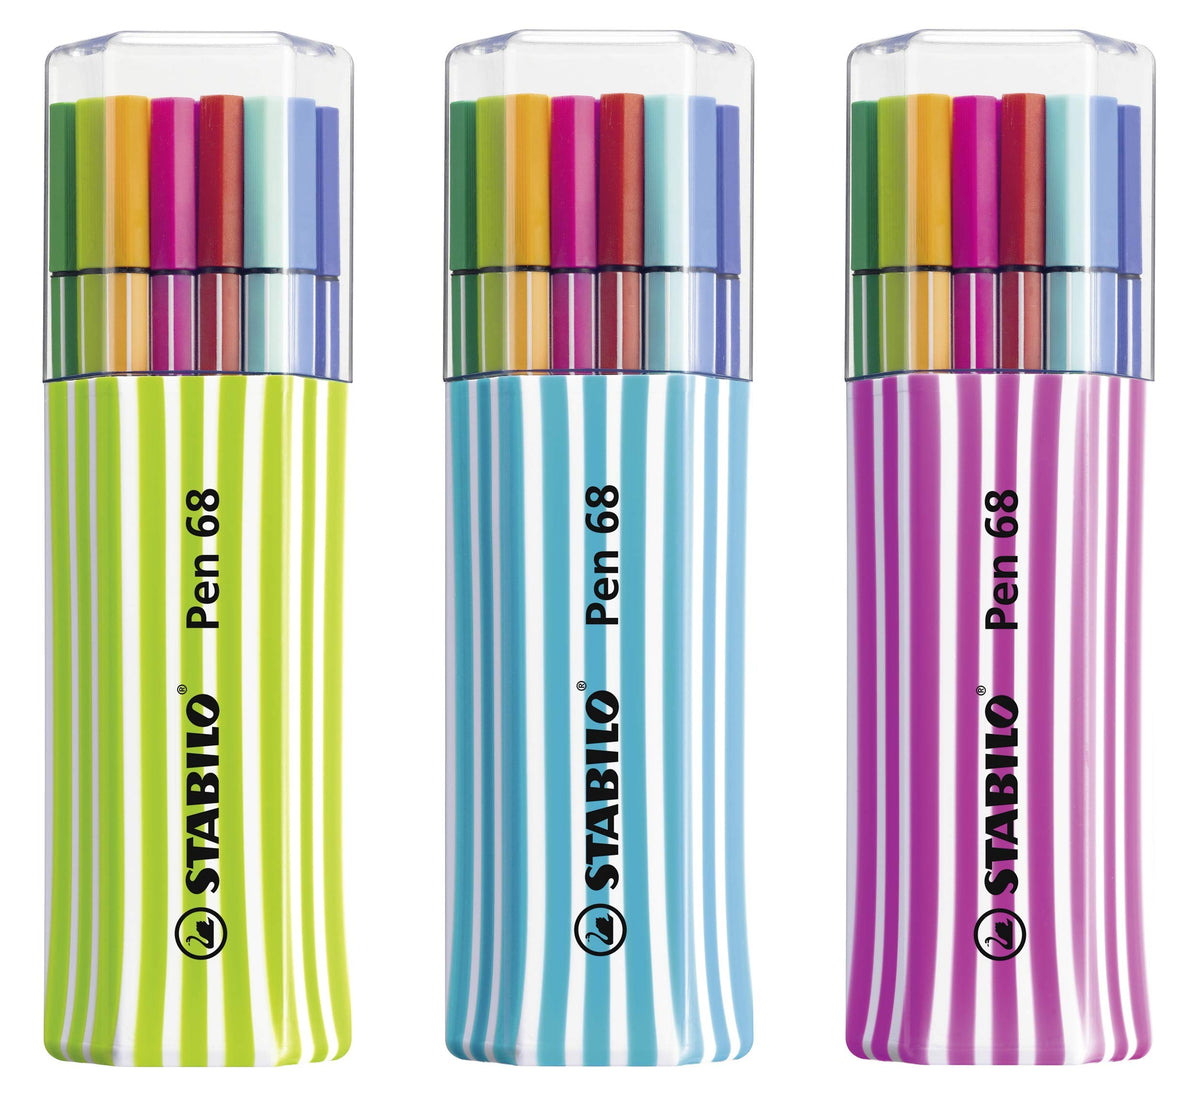 STABILO Premium Fiber-Tip Pen with Brush Tip Pen 68 brush - Tin of 15 -  Assorted Colors